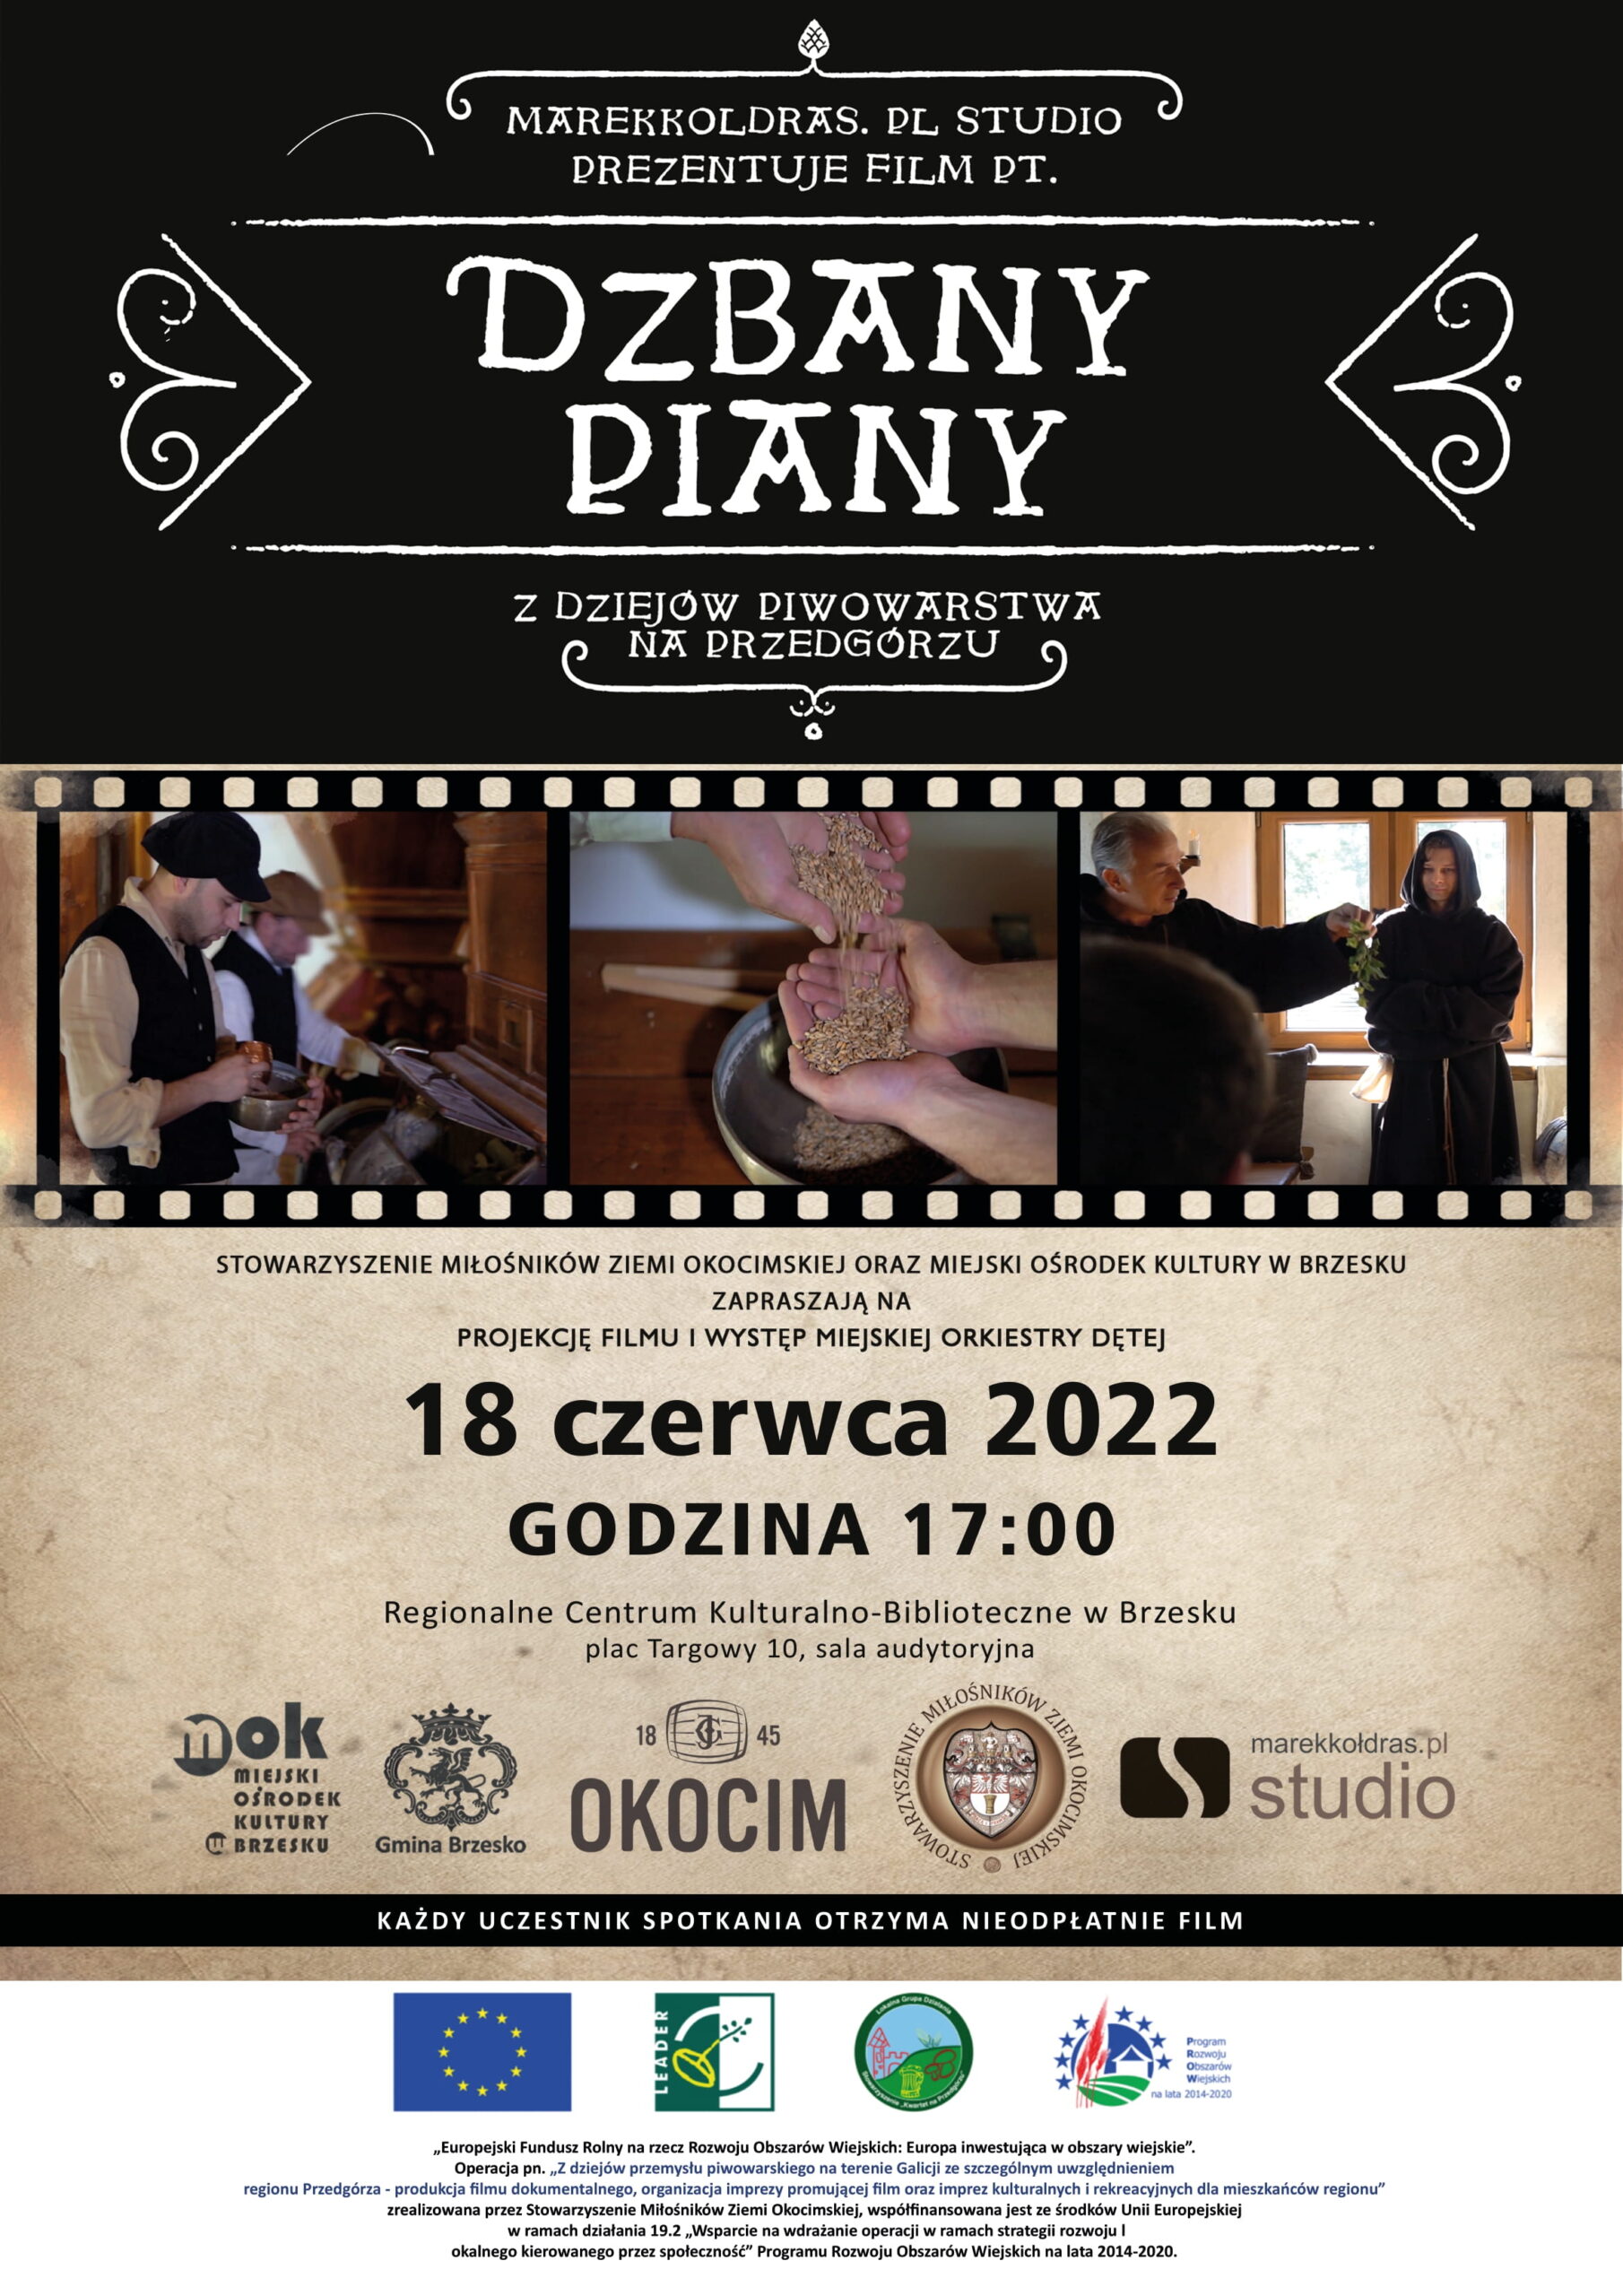 Premiera filmu “Dzbany Piany” – 18 czerwca 2022